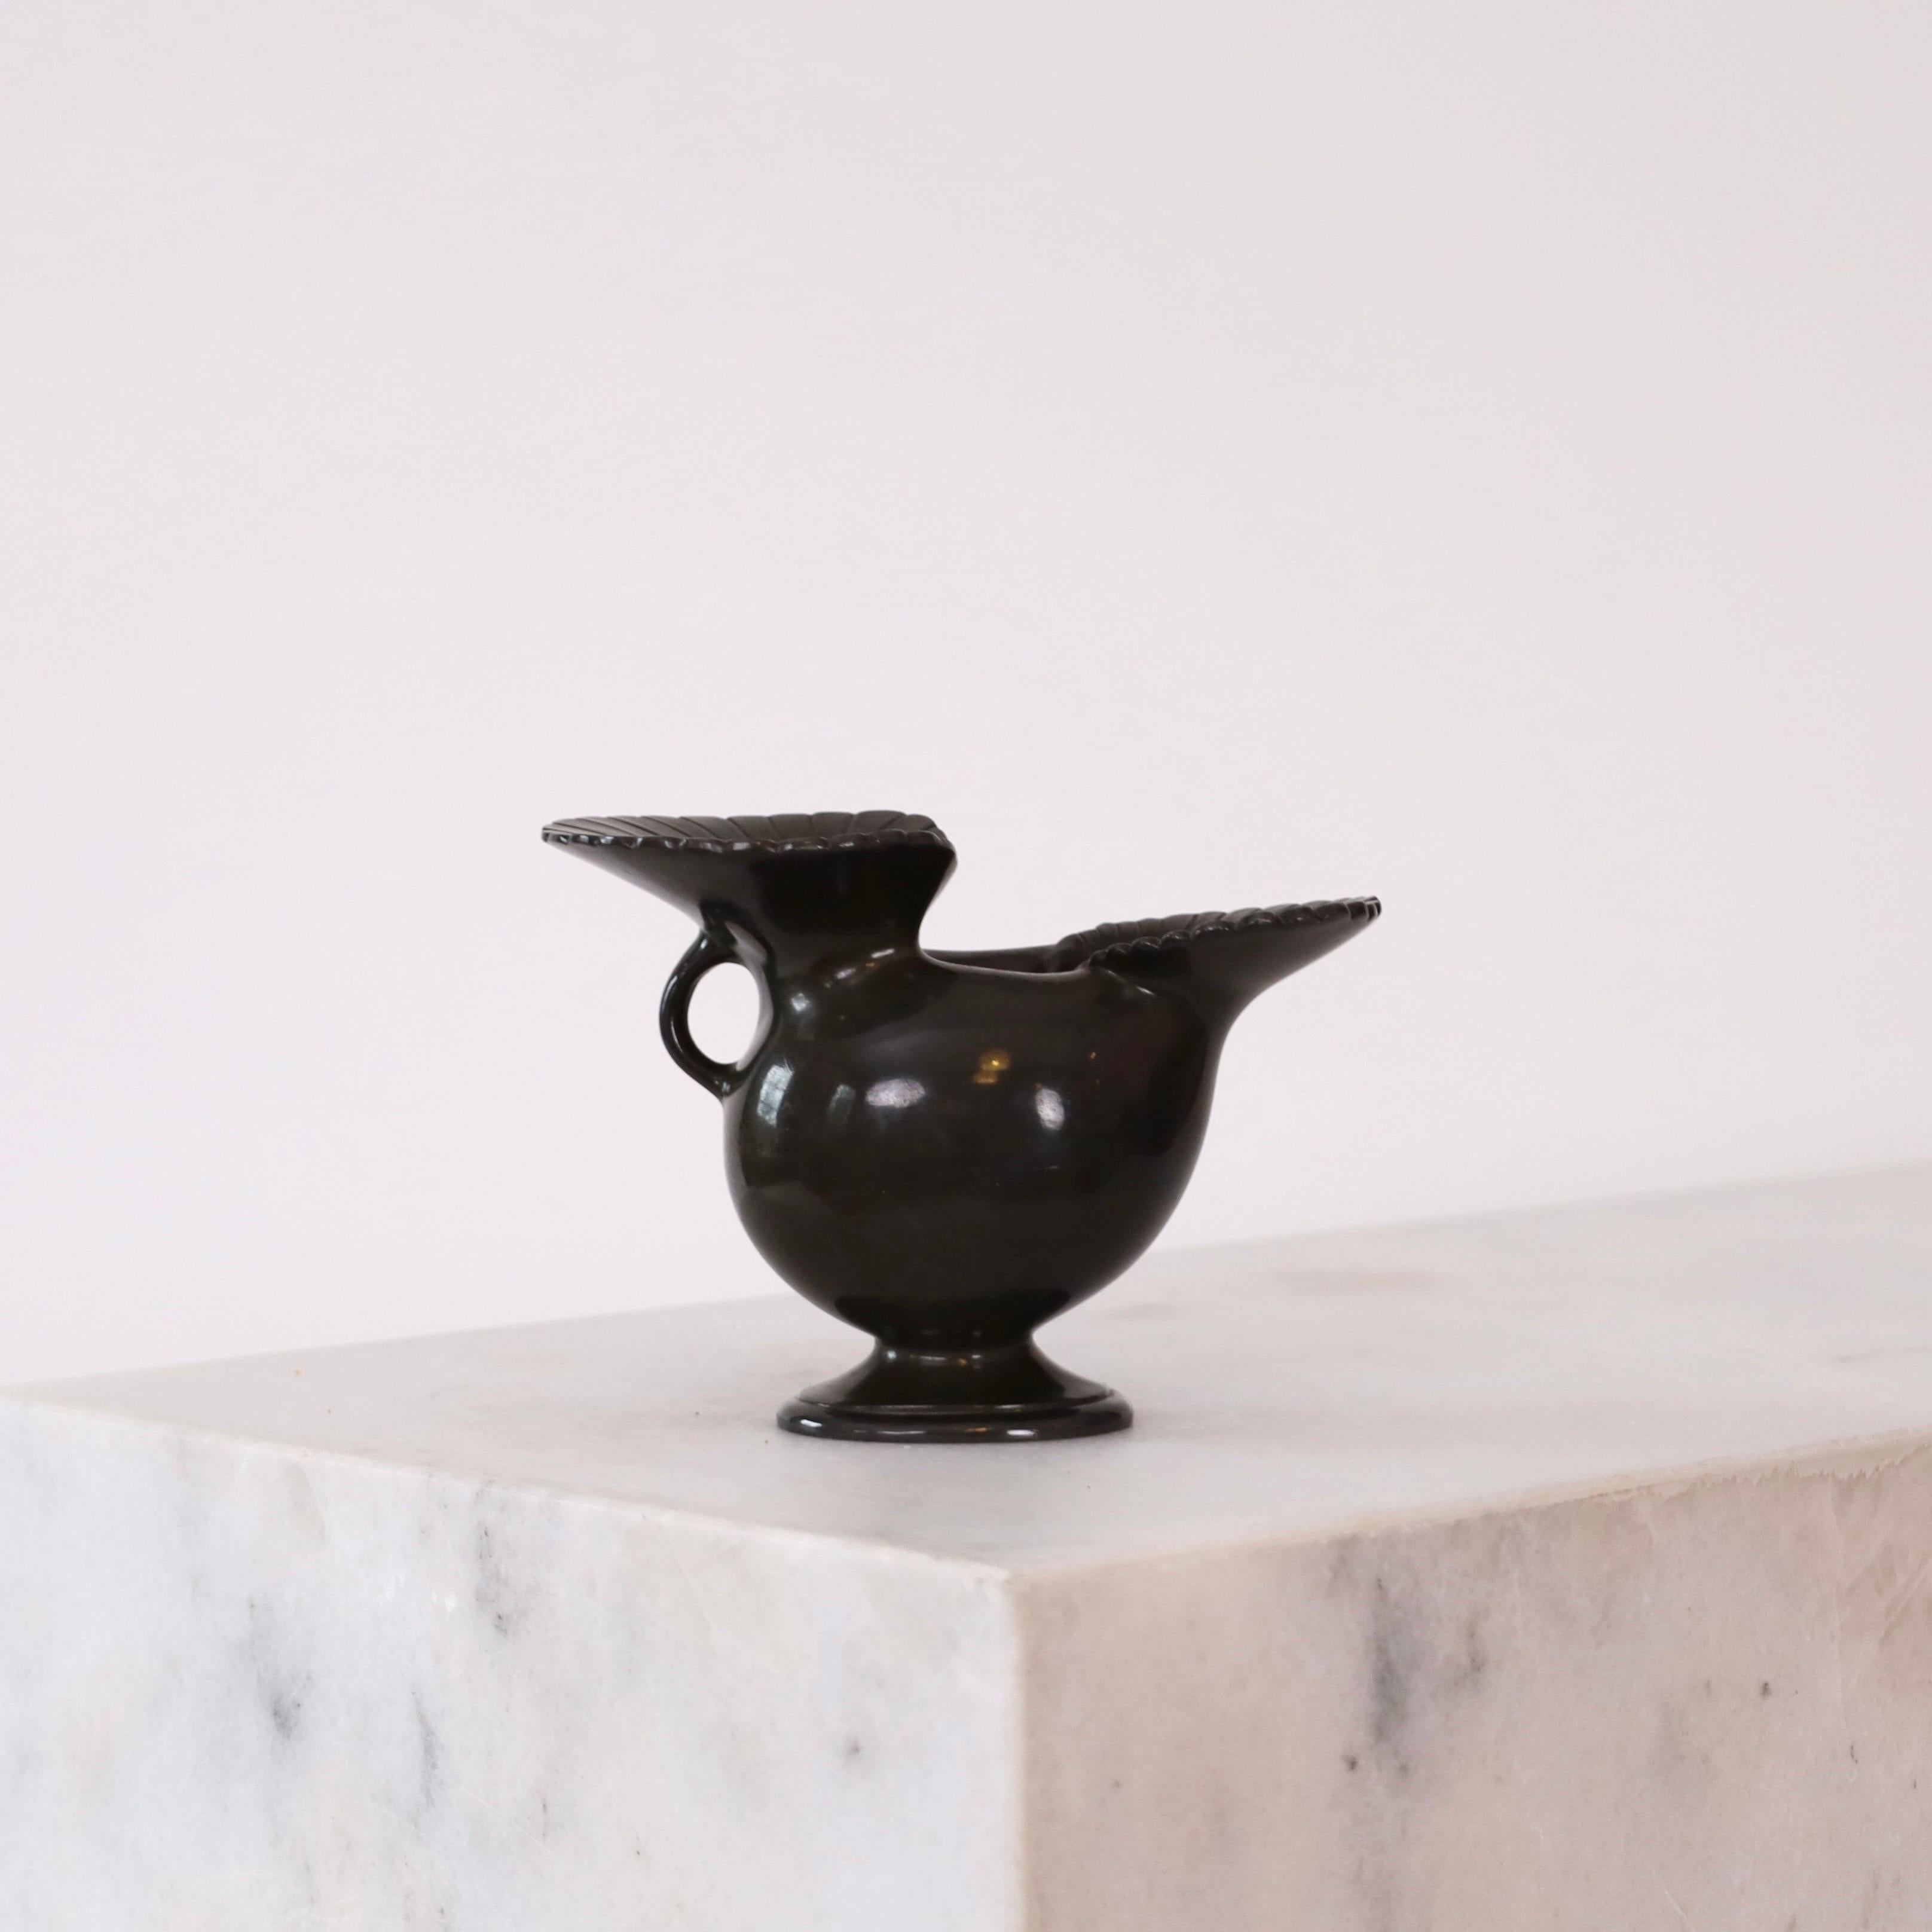 Exquisite Art-déco-Vase, entworfen von Just Andersen in den späten 1920er Jahren. Es ist ein Musterbeispiel für die zeitlose Anziehungskraft von Just Andersens und ein schönes Detail für jeden schönen Raum.

* Eine Metallvase mit Fuß in organischen